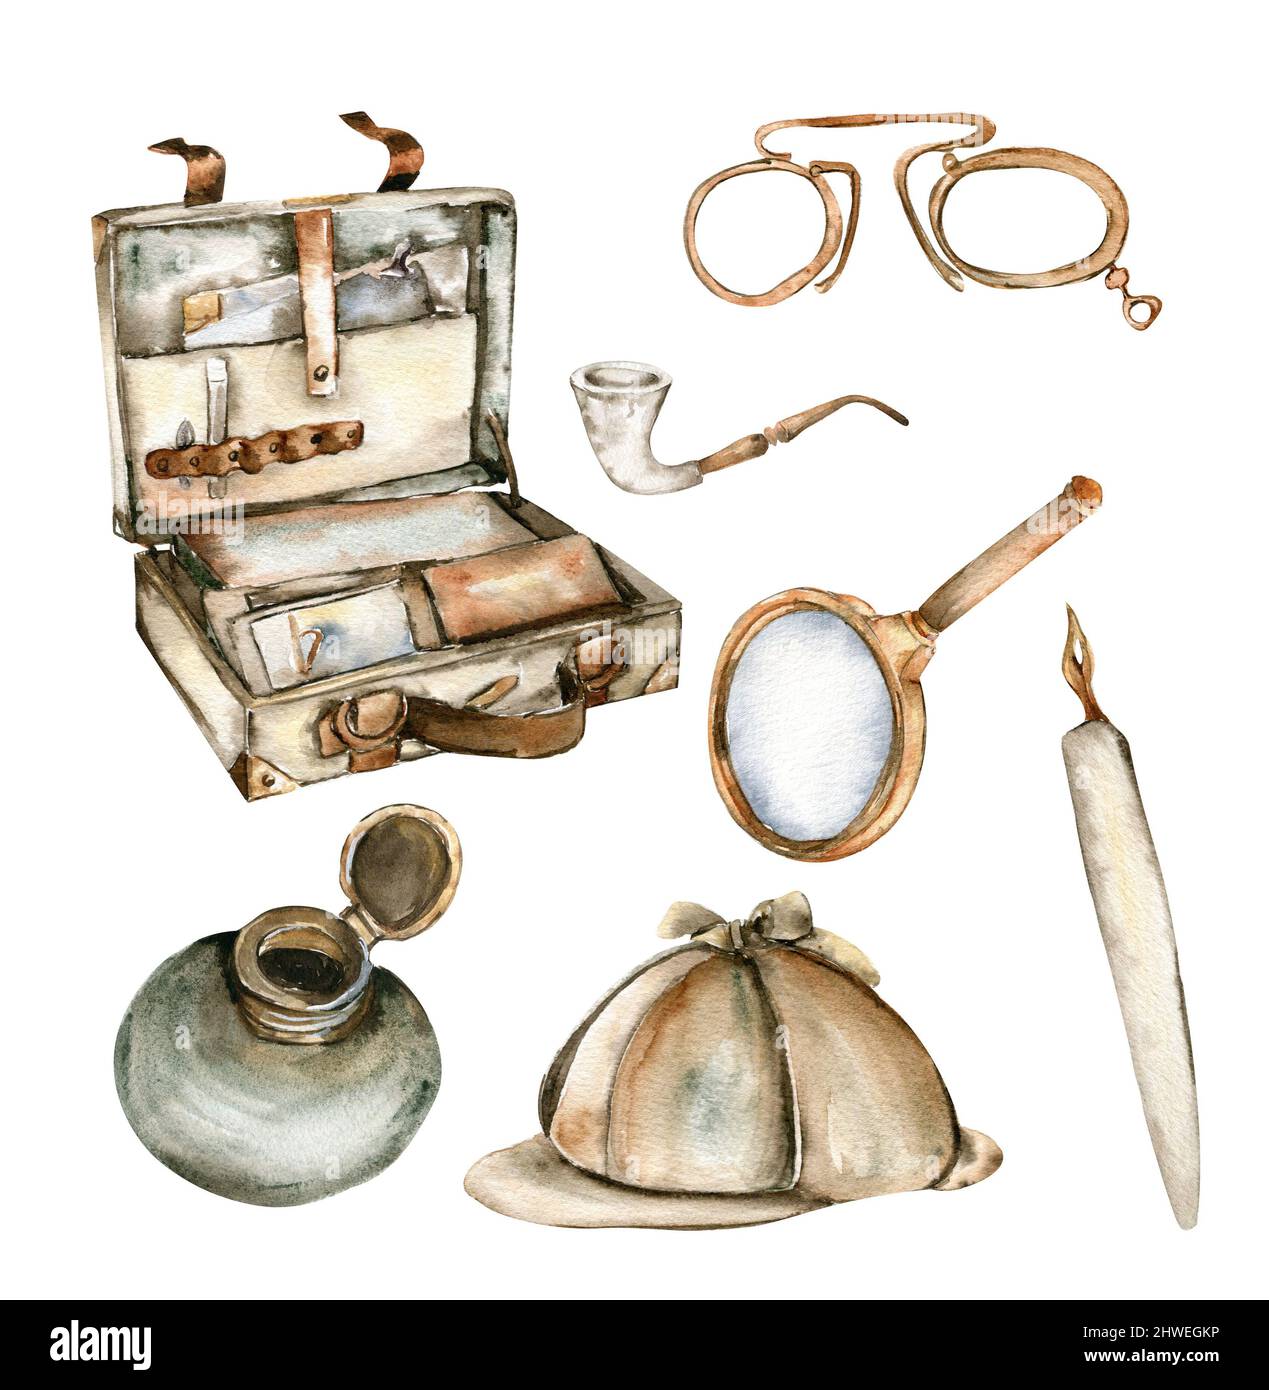 Teléfono antiguo inglés vintage, chimenea, puerta, violín, pub, tintas, bolsa de viaje, libro Foto de stock